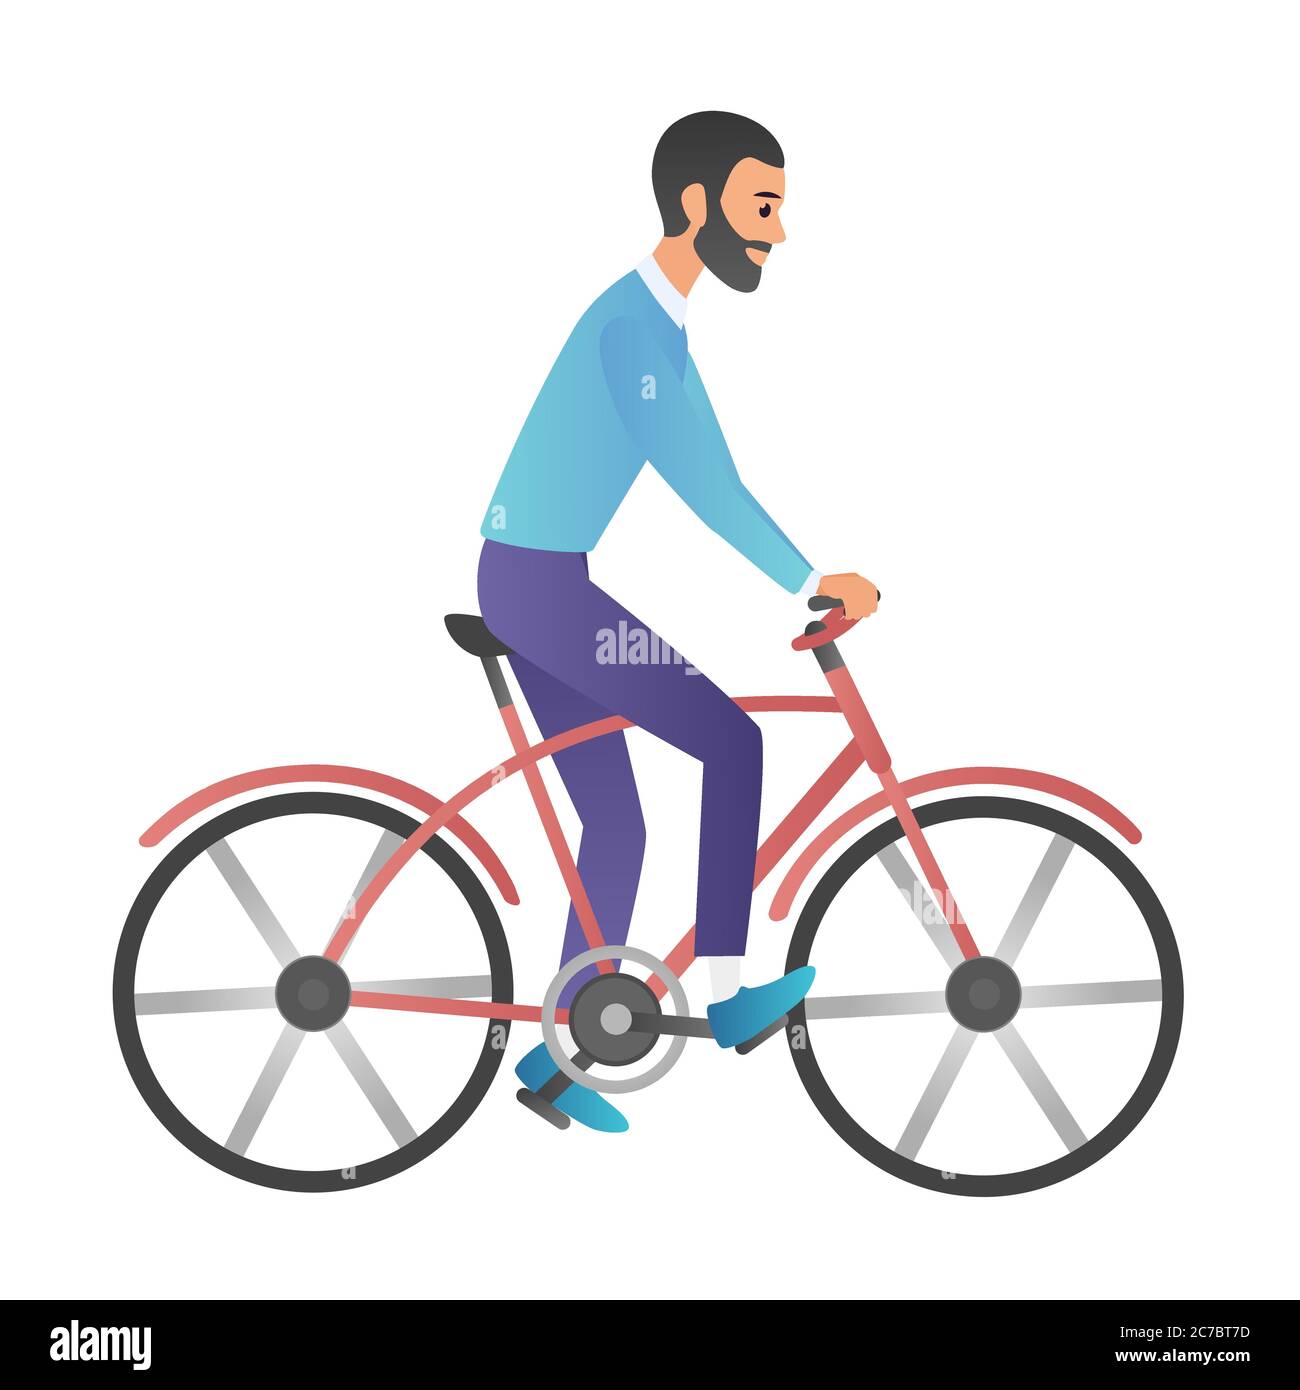 Illustrazione vettoriale in stile cartoon di uomo che corre sulla moto isolato su sfondo bianco. Stile sfumato cartoon alla moda Illustrazione Vettoriale